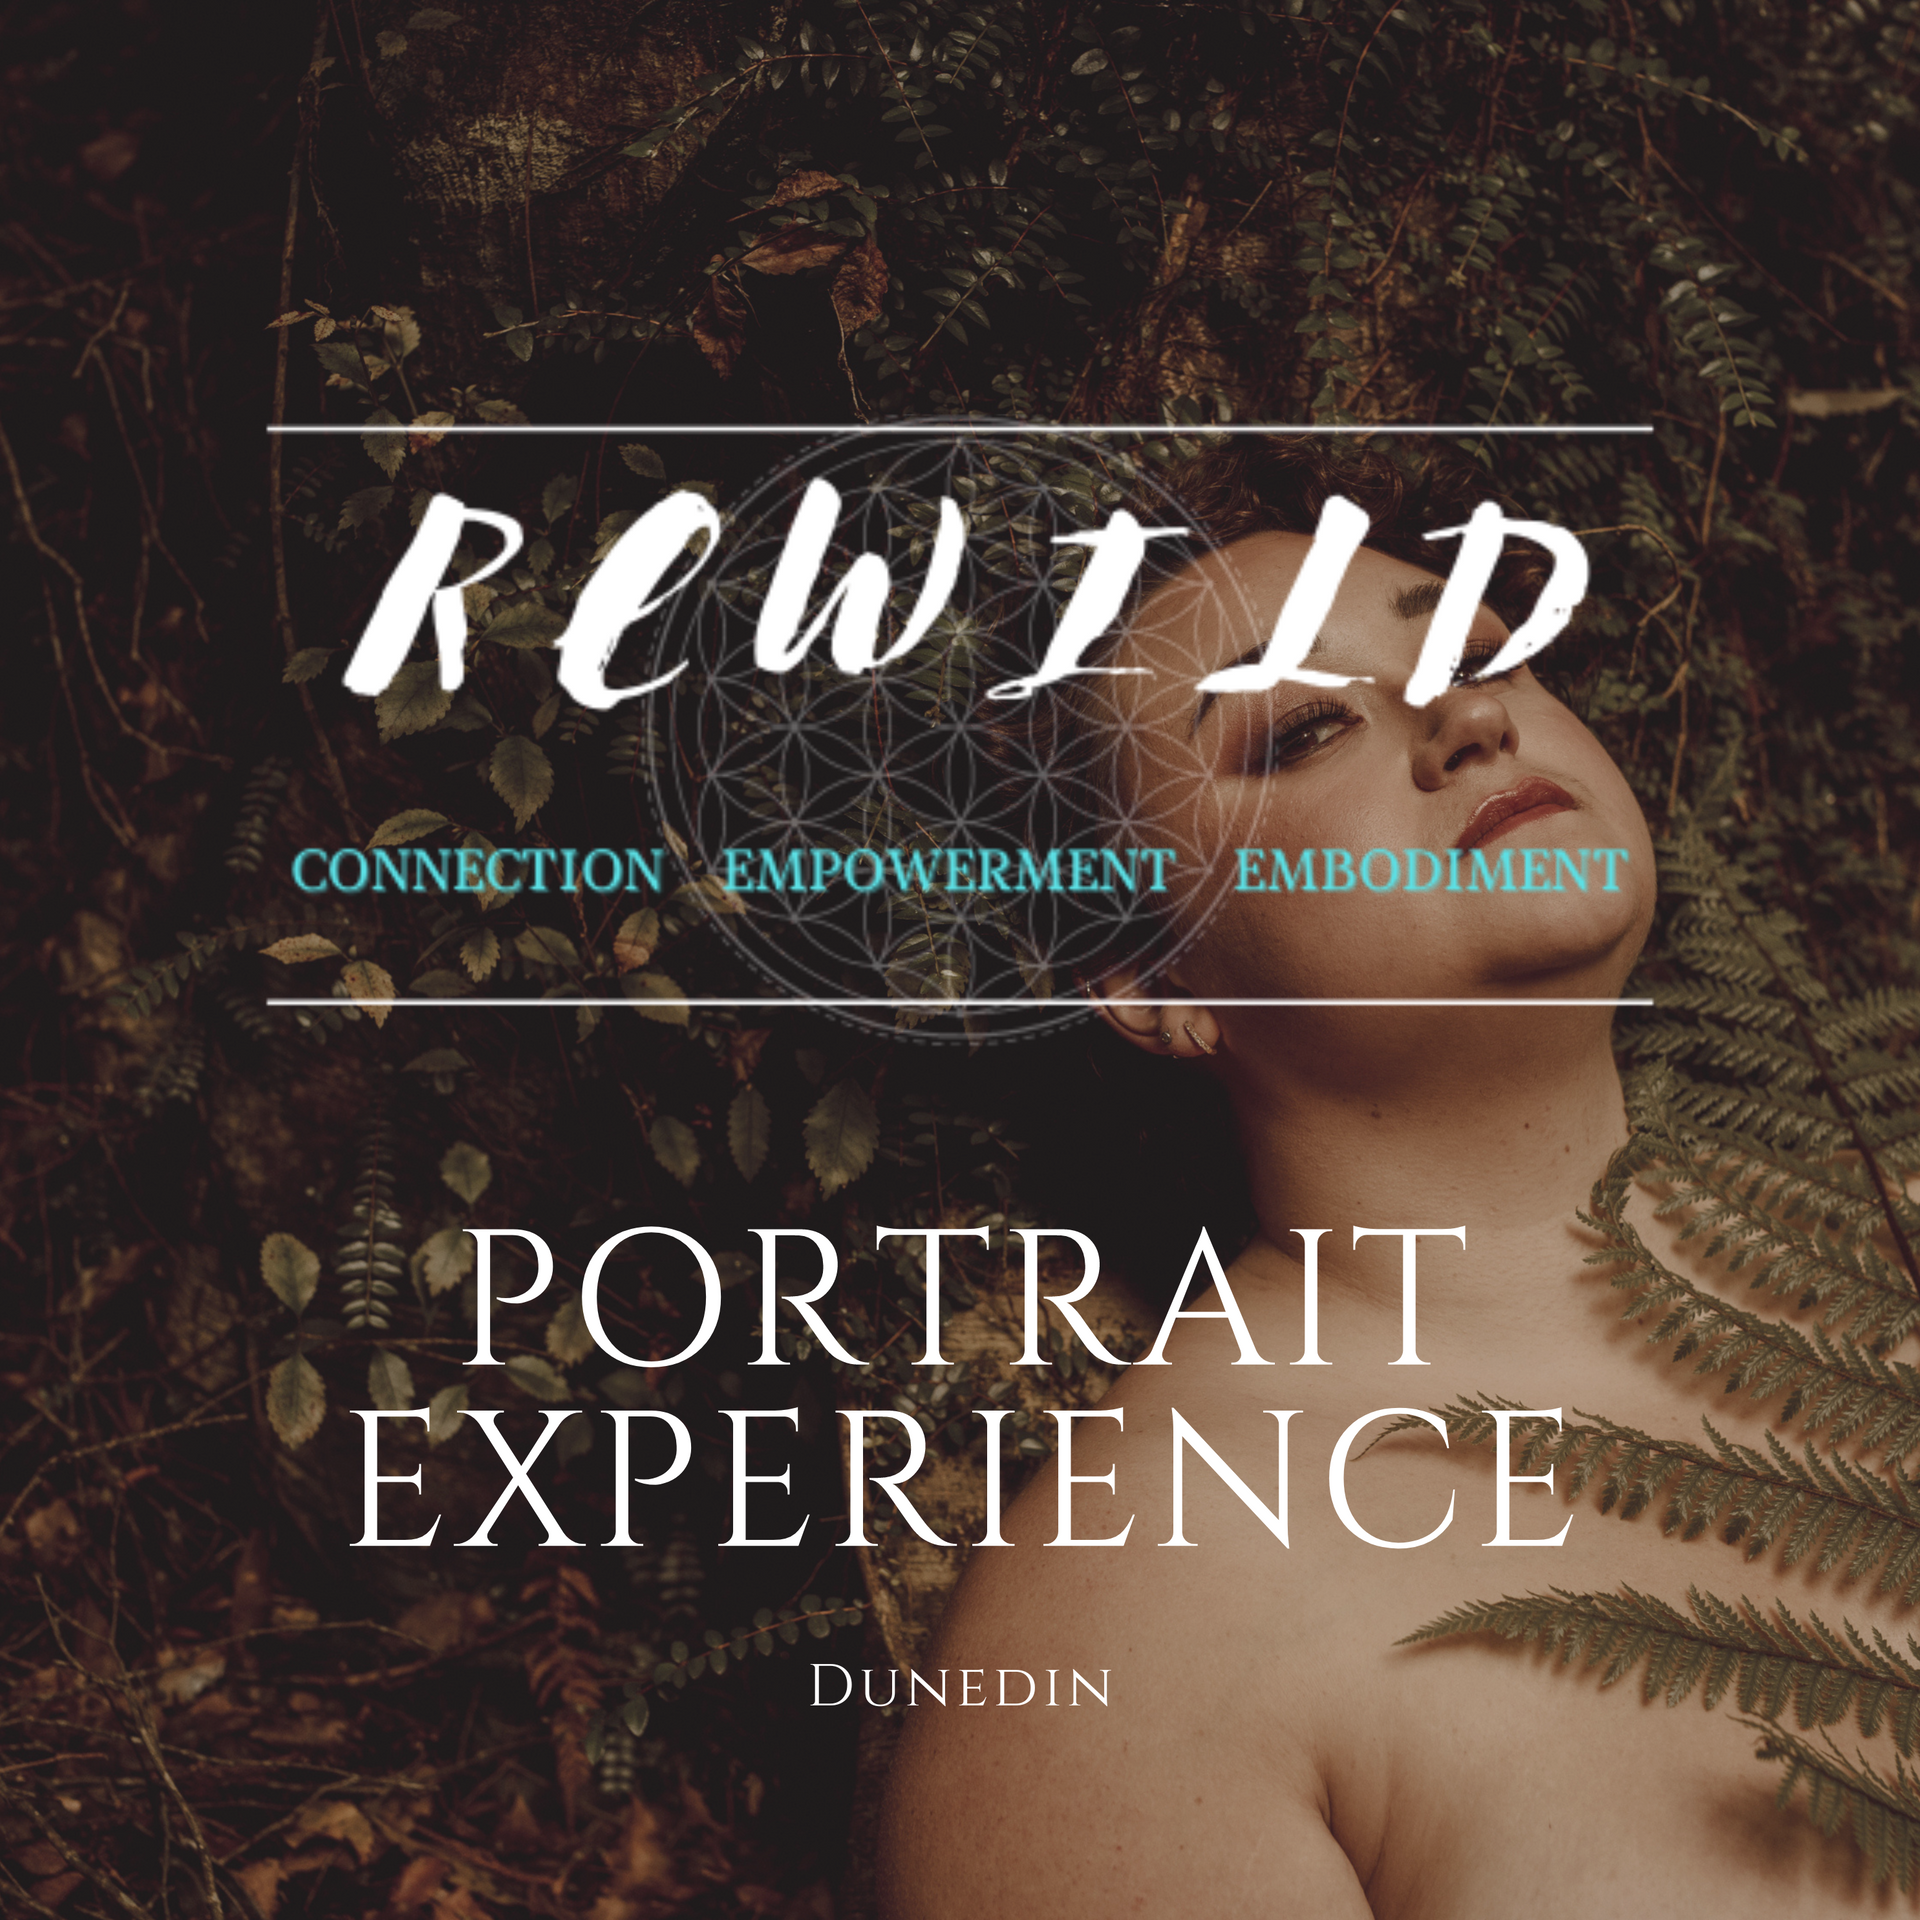 Rewild Portrait Experience: Dunedin